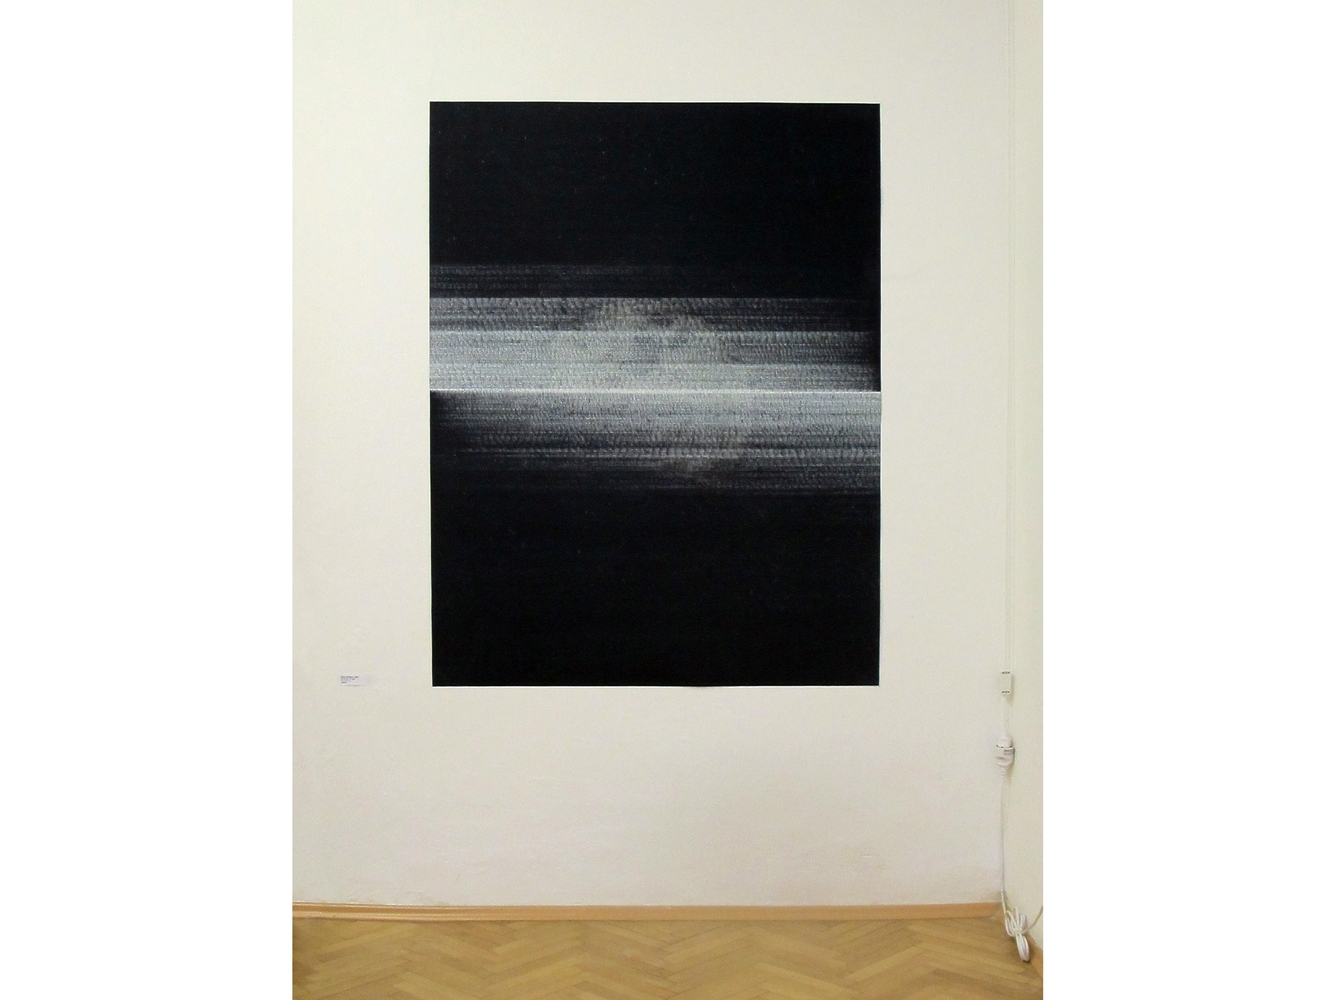 Nocturno, Dark Matter Gallery, Prague, CZ, fall 2016